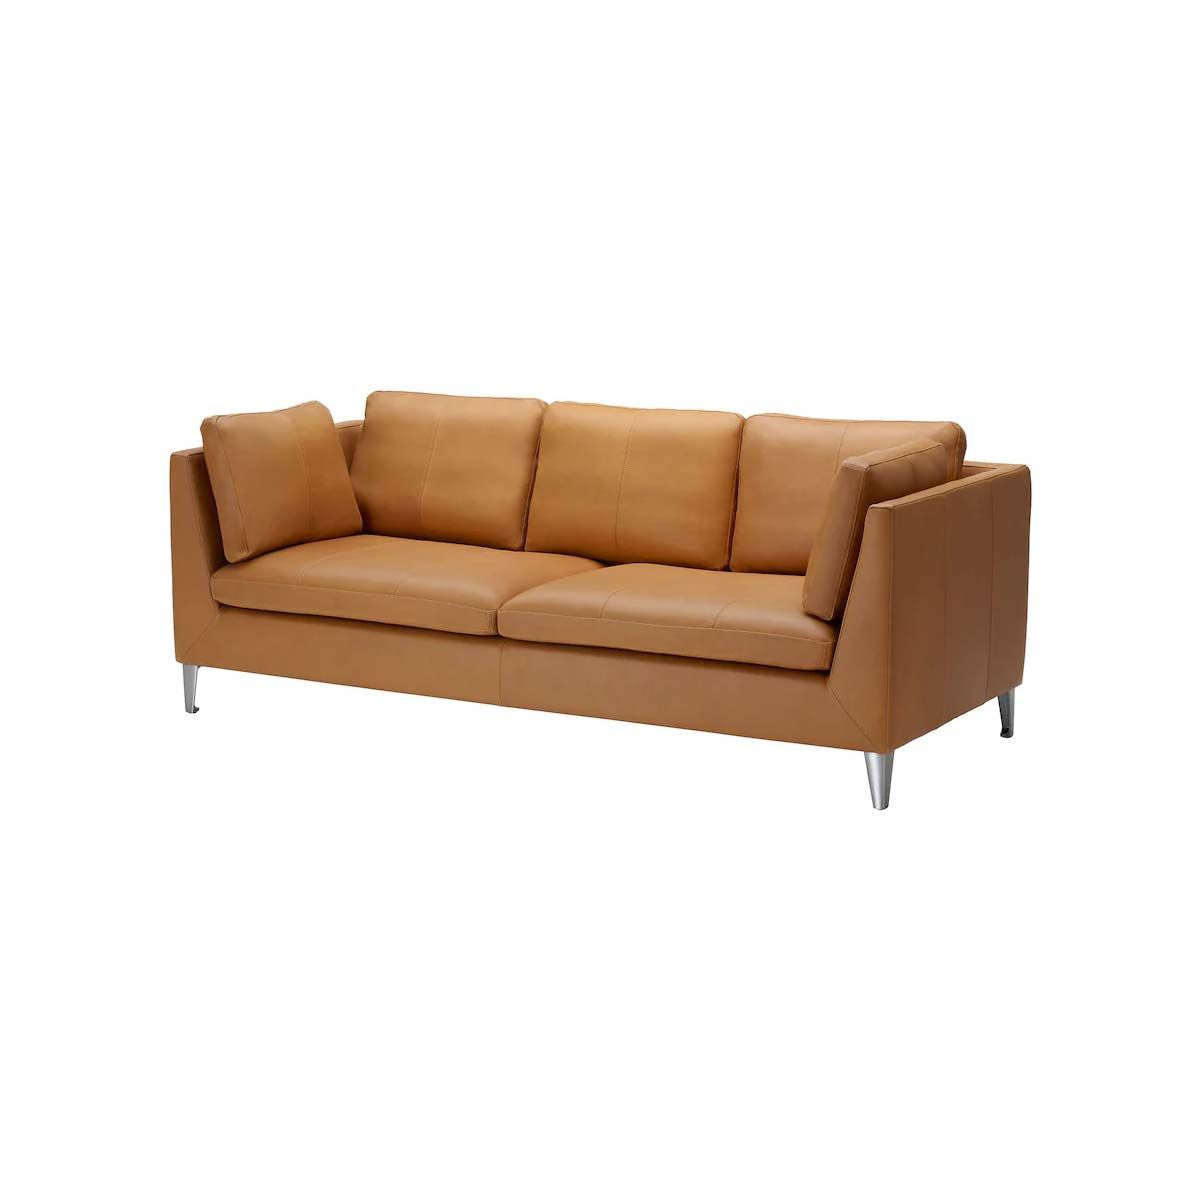 40 sofás modernos y actuales para todos los estilos